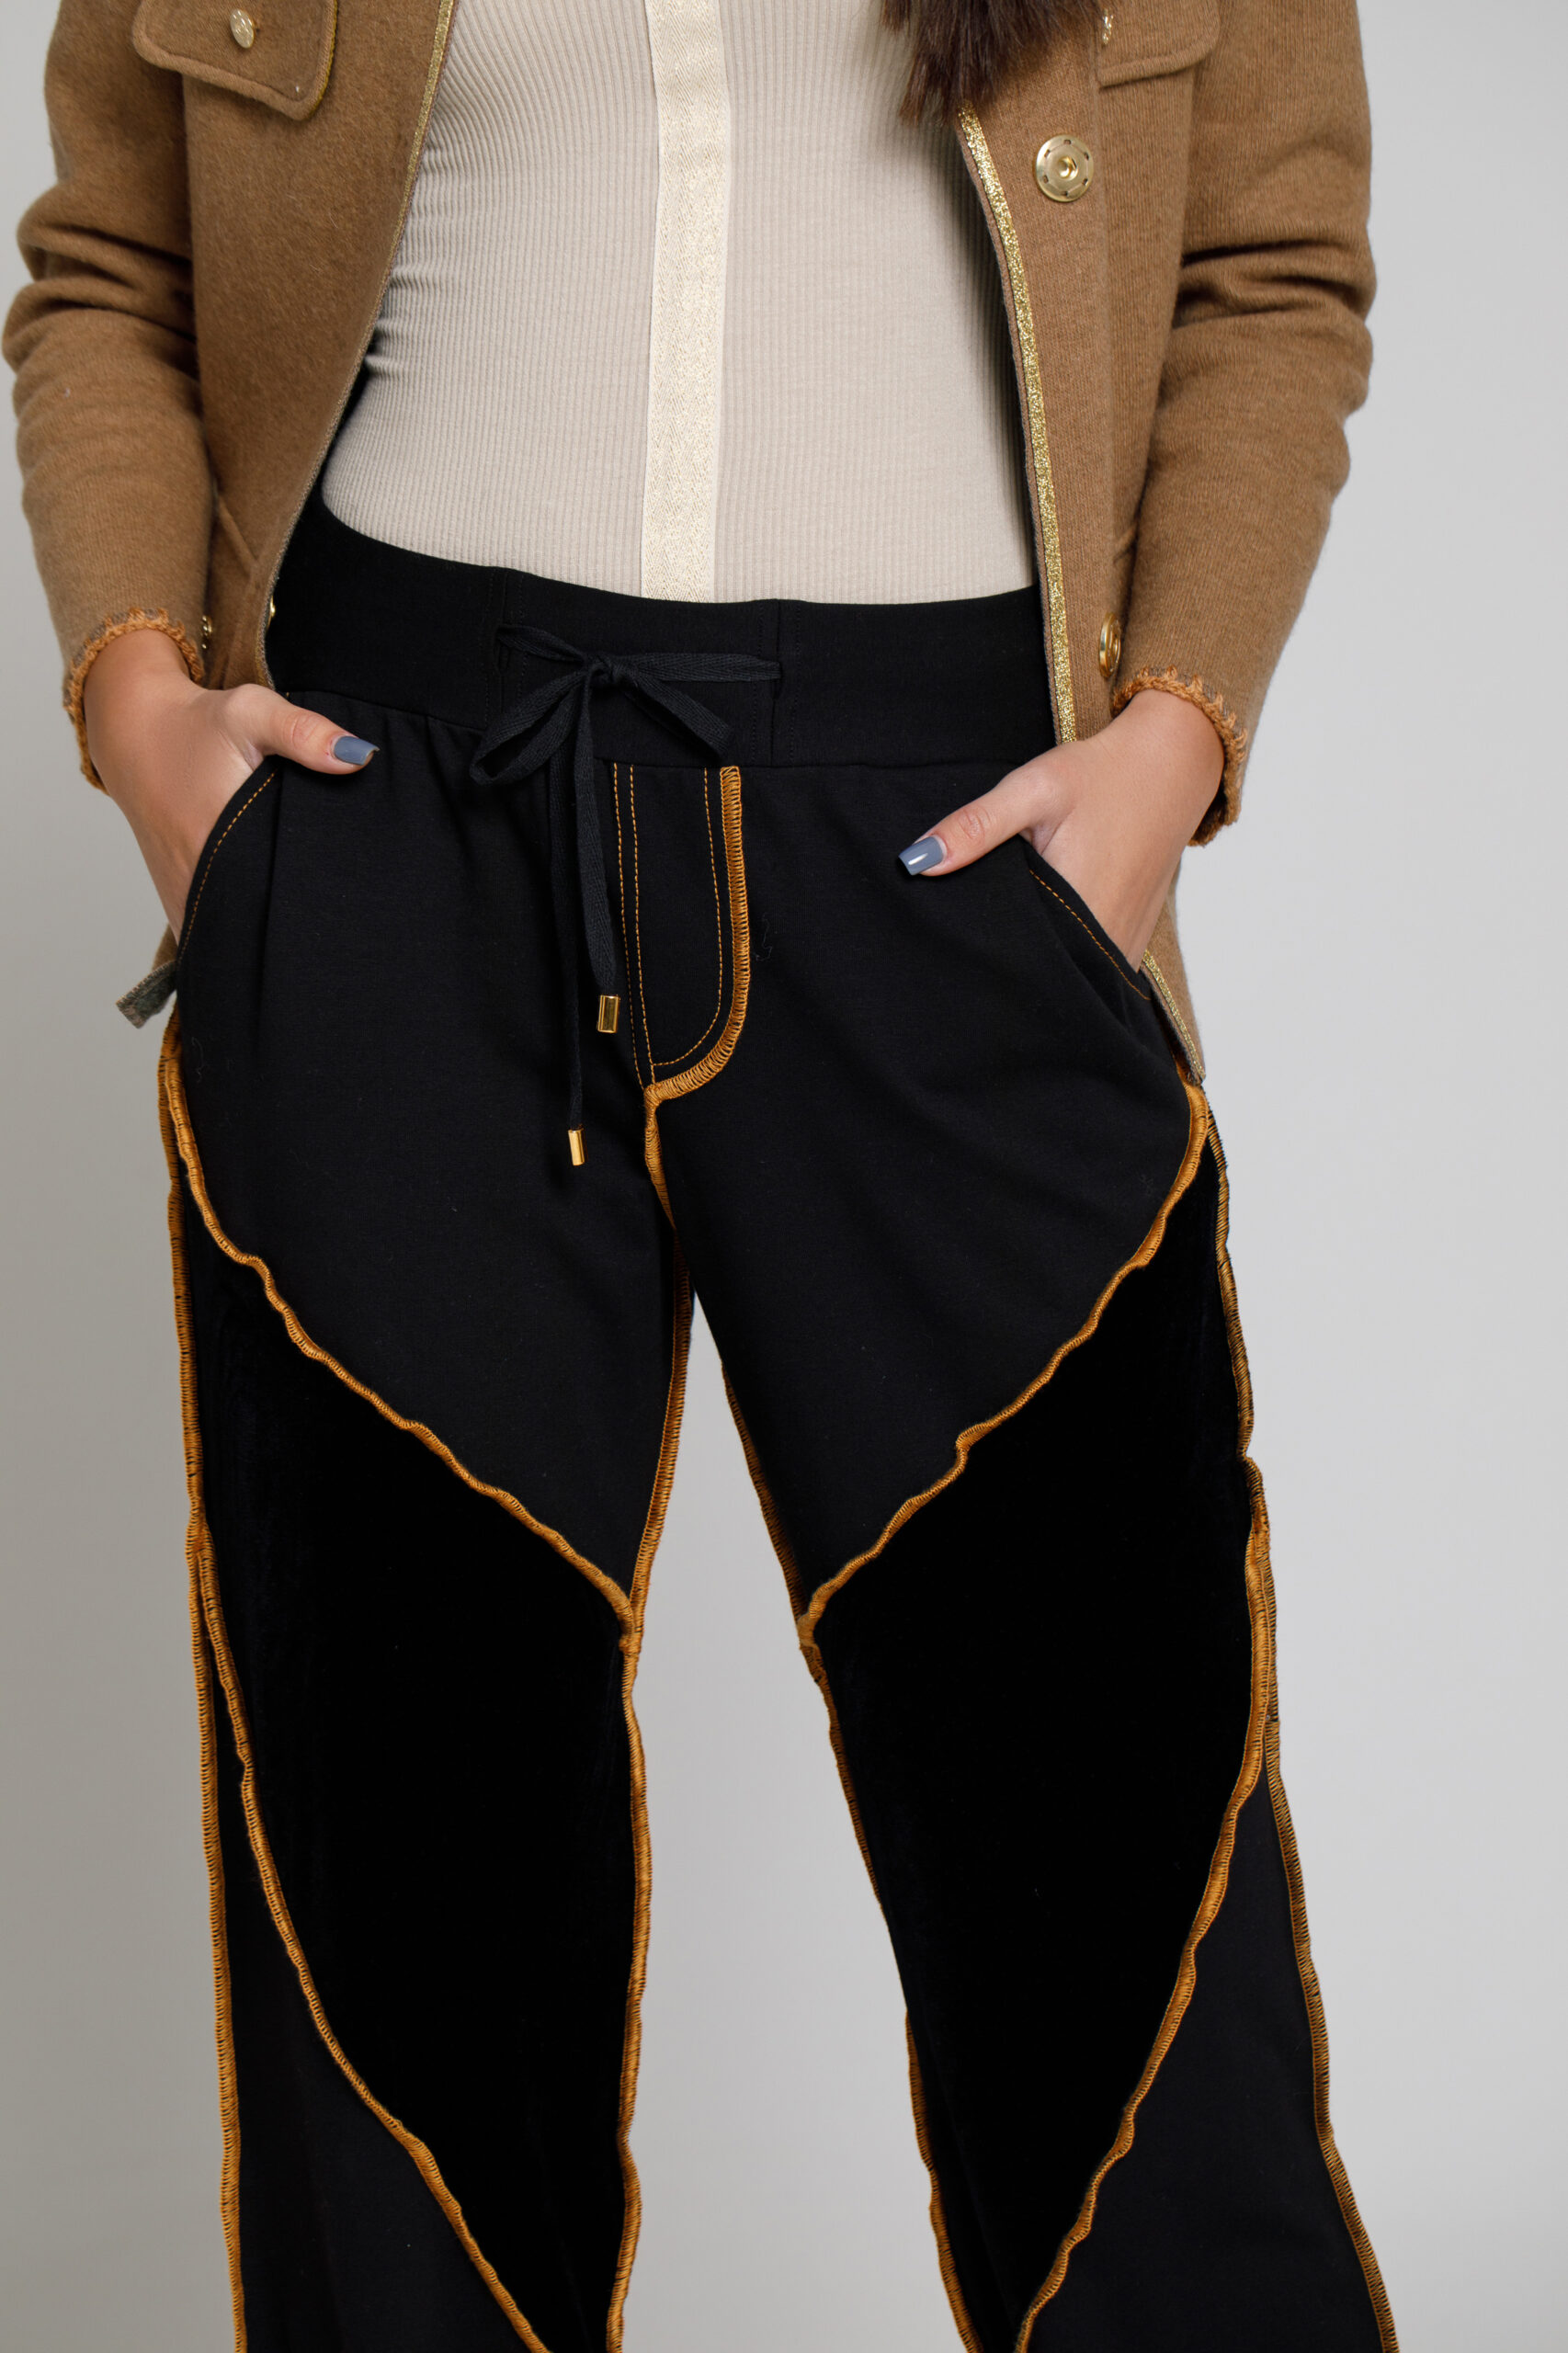 Pantalon MORY din felpa si catifea neagra cu cusaturi evidentiate. Materiale naturale, design unicat, cu broderie si aplicatii handmade